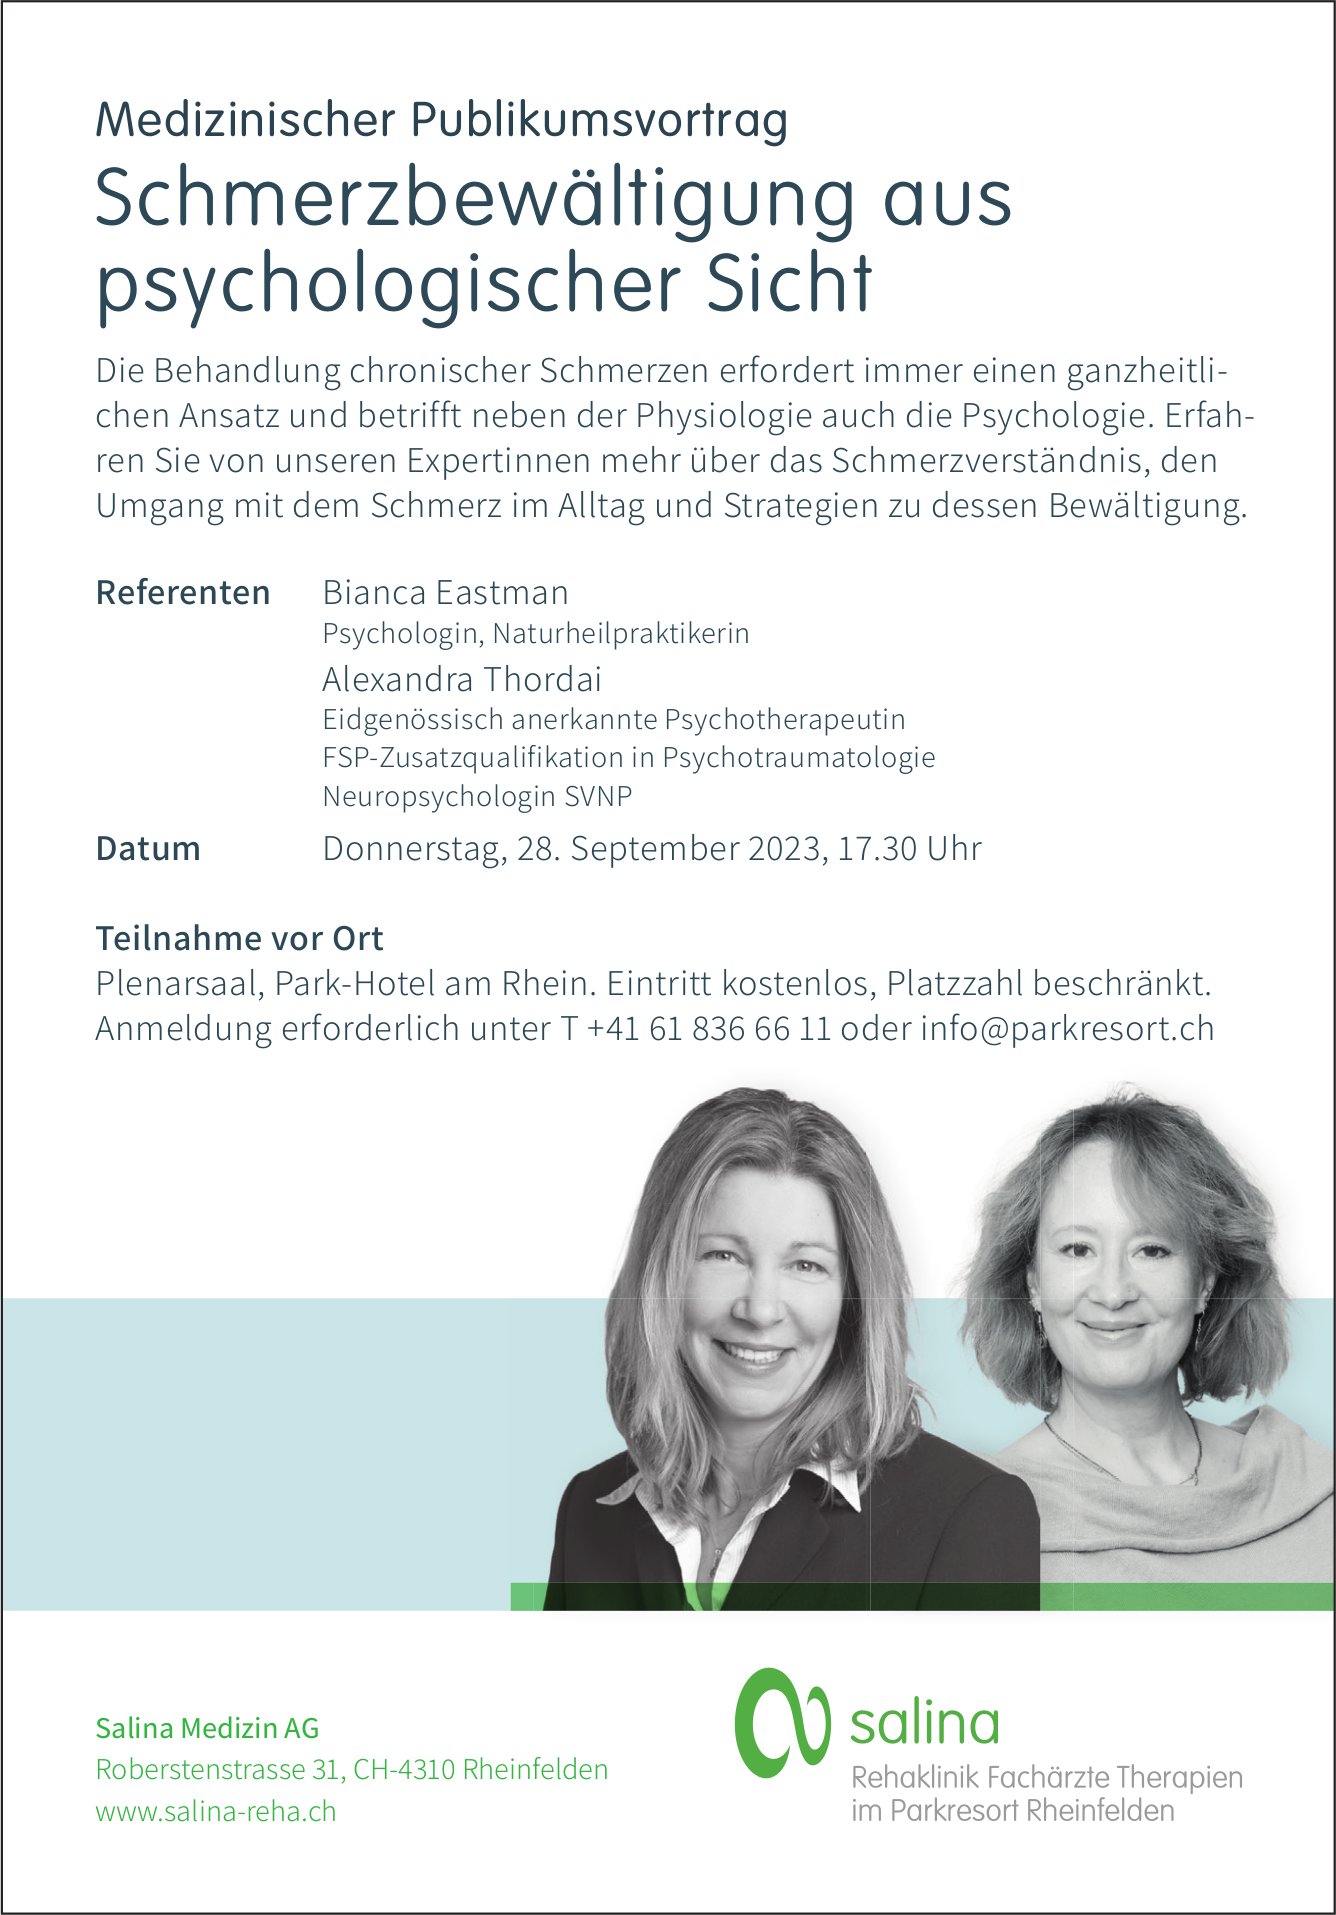 Schmerzbewältigung aus psychologischer Sicht, 28. September, Plenarsaal, Park-Hotel am Rhein, Rheinfelden